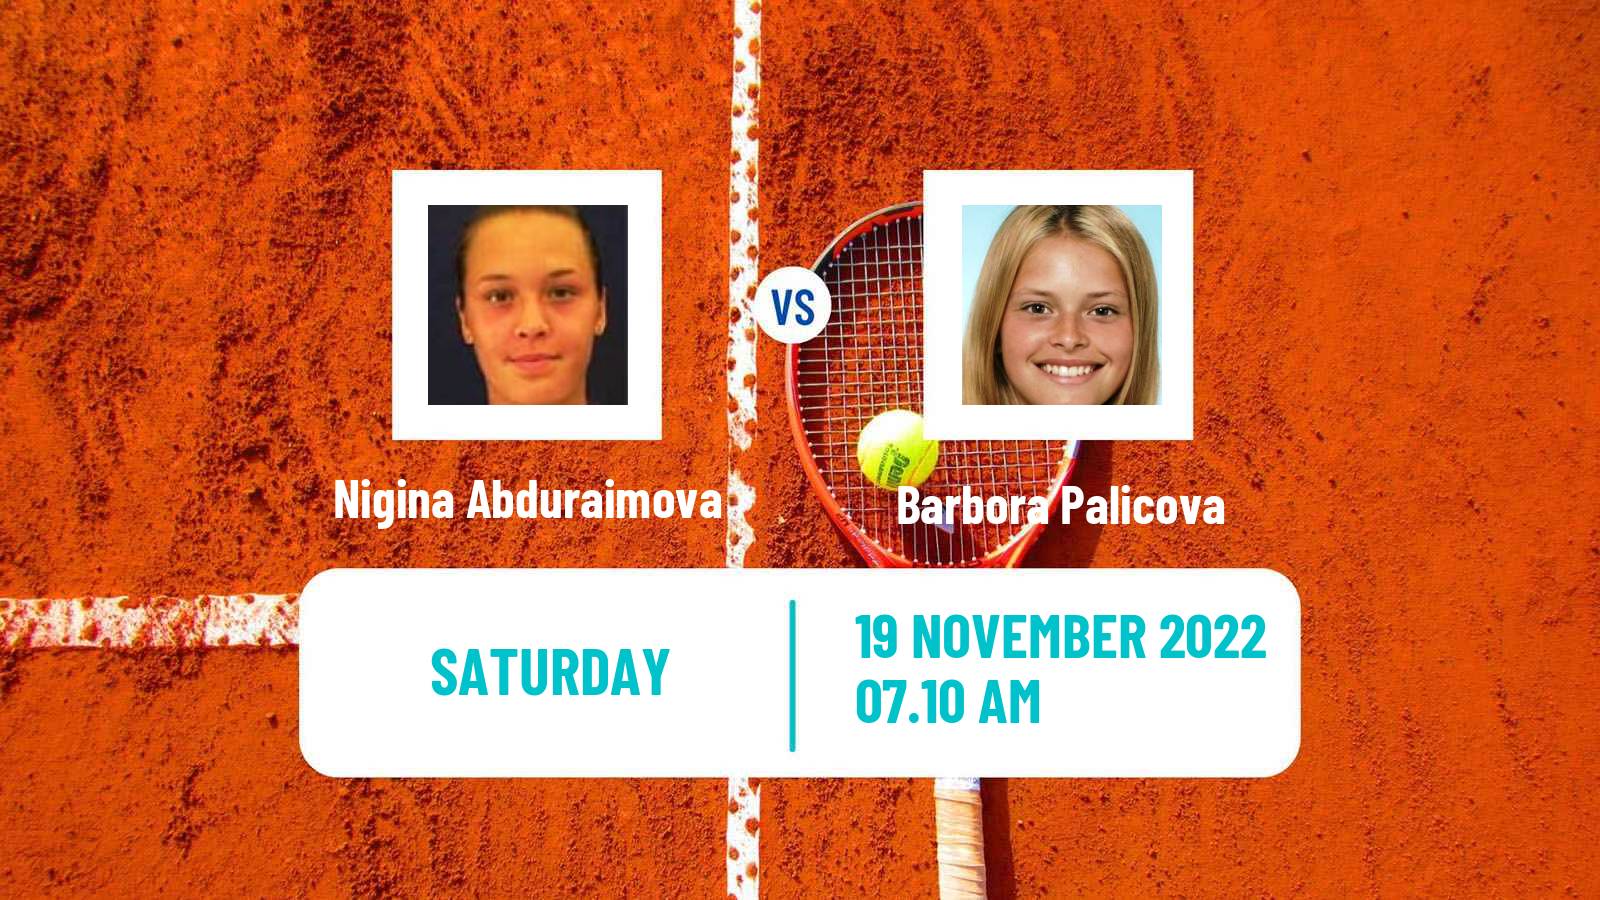 Tennis ITF Tournaments Nigina Abduraimova - Barbora Palicova